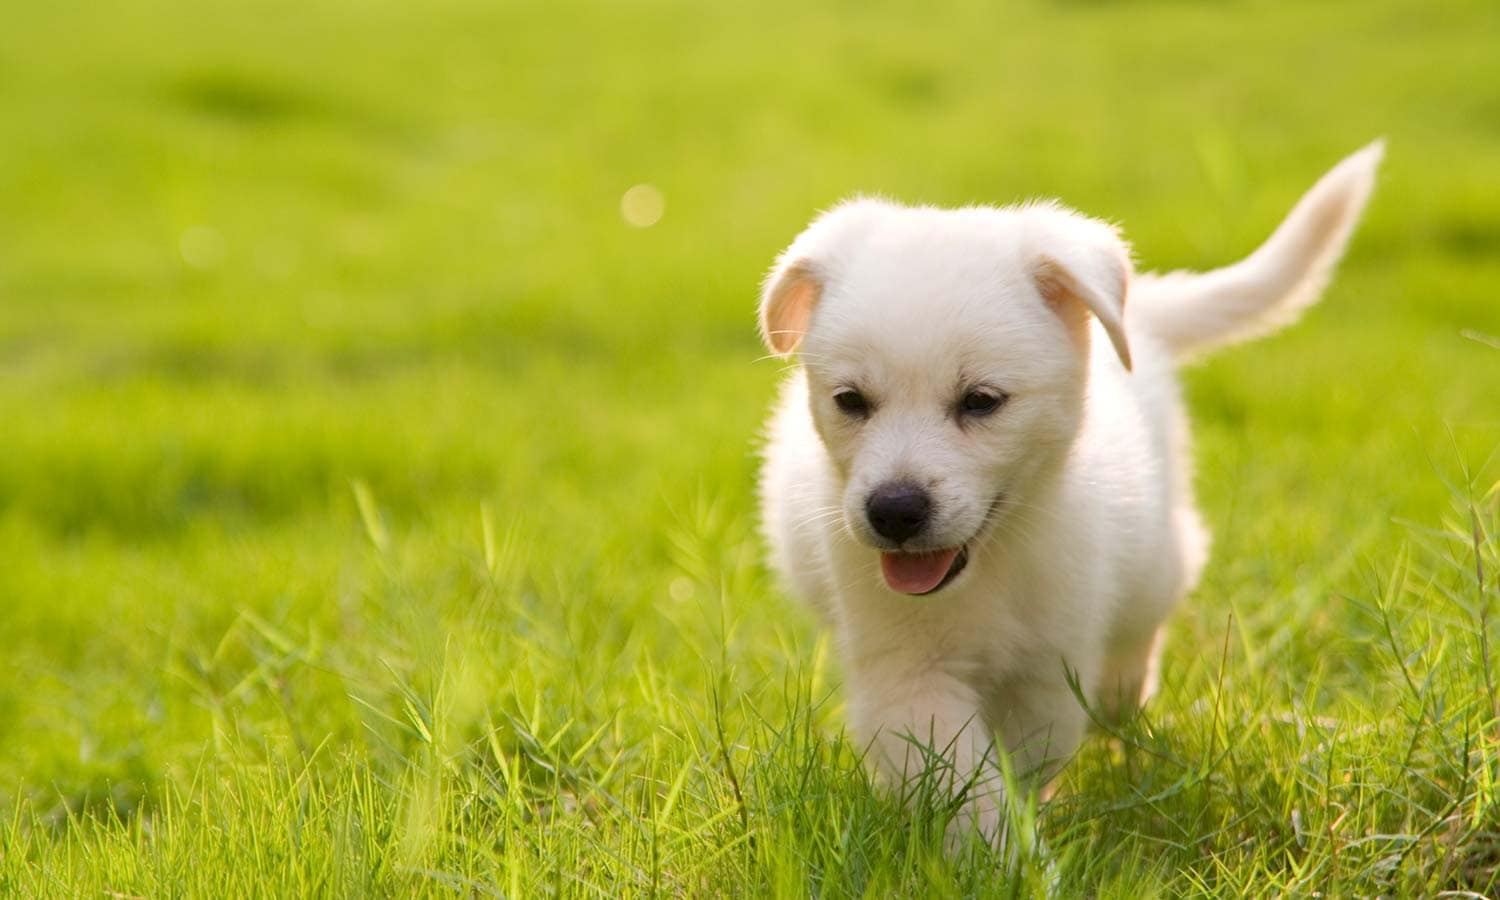 Puppy running in grass